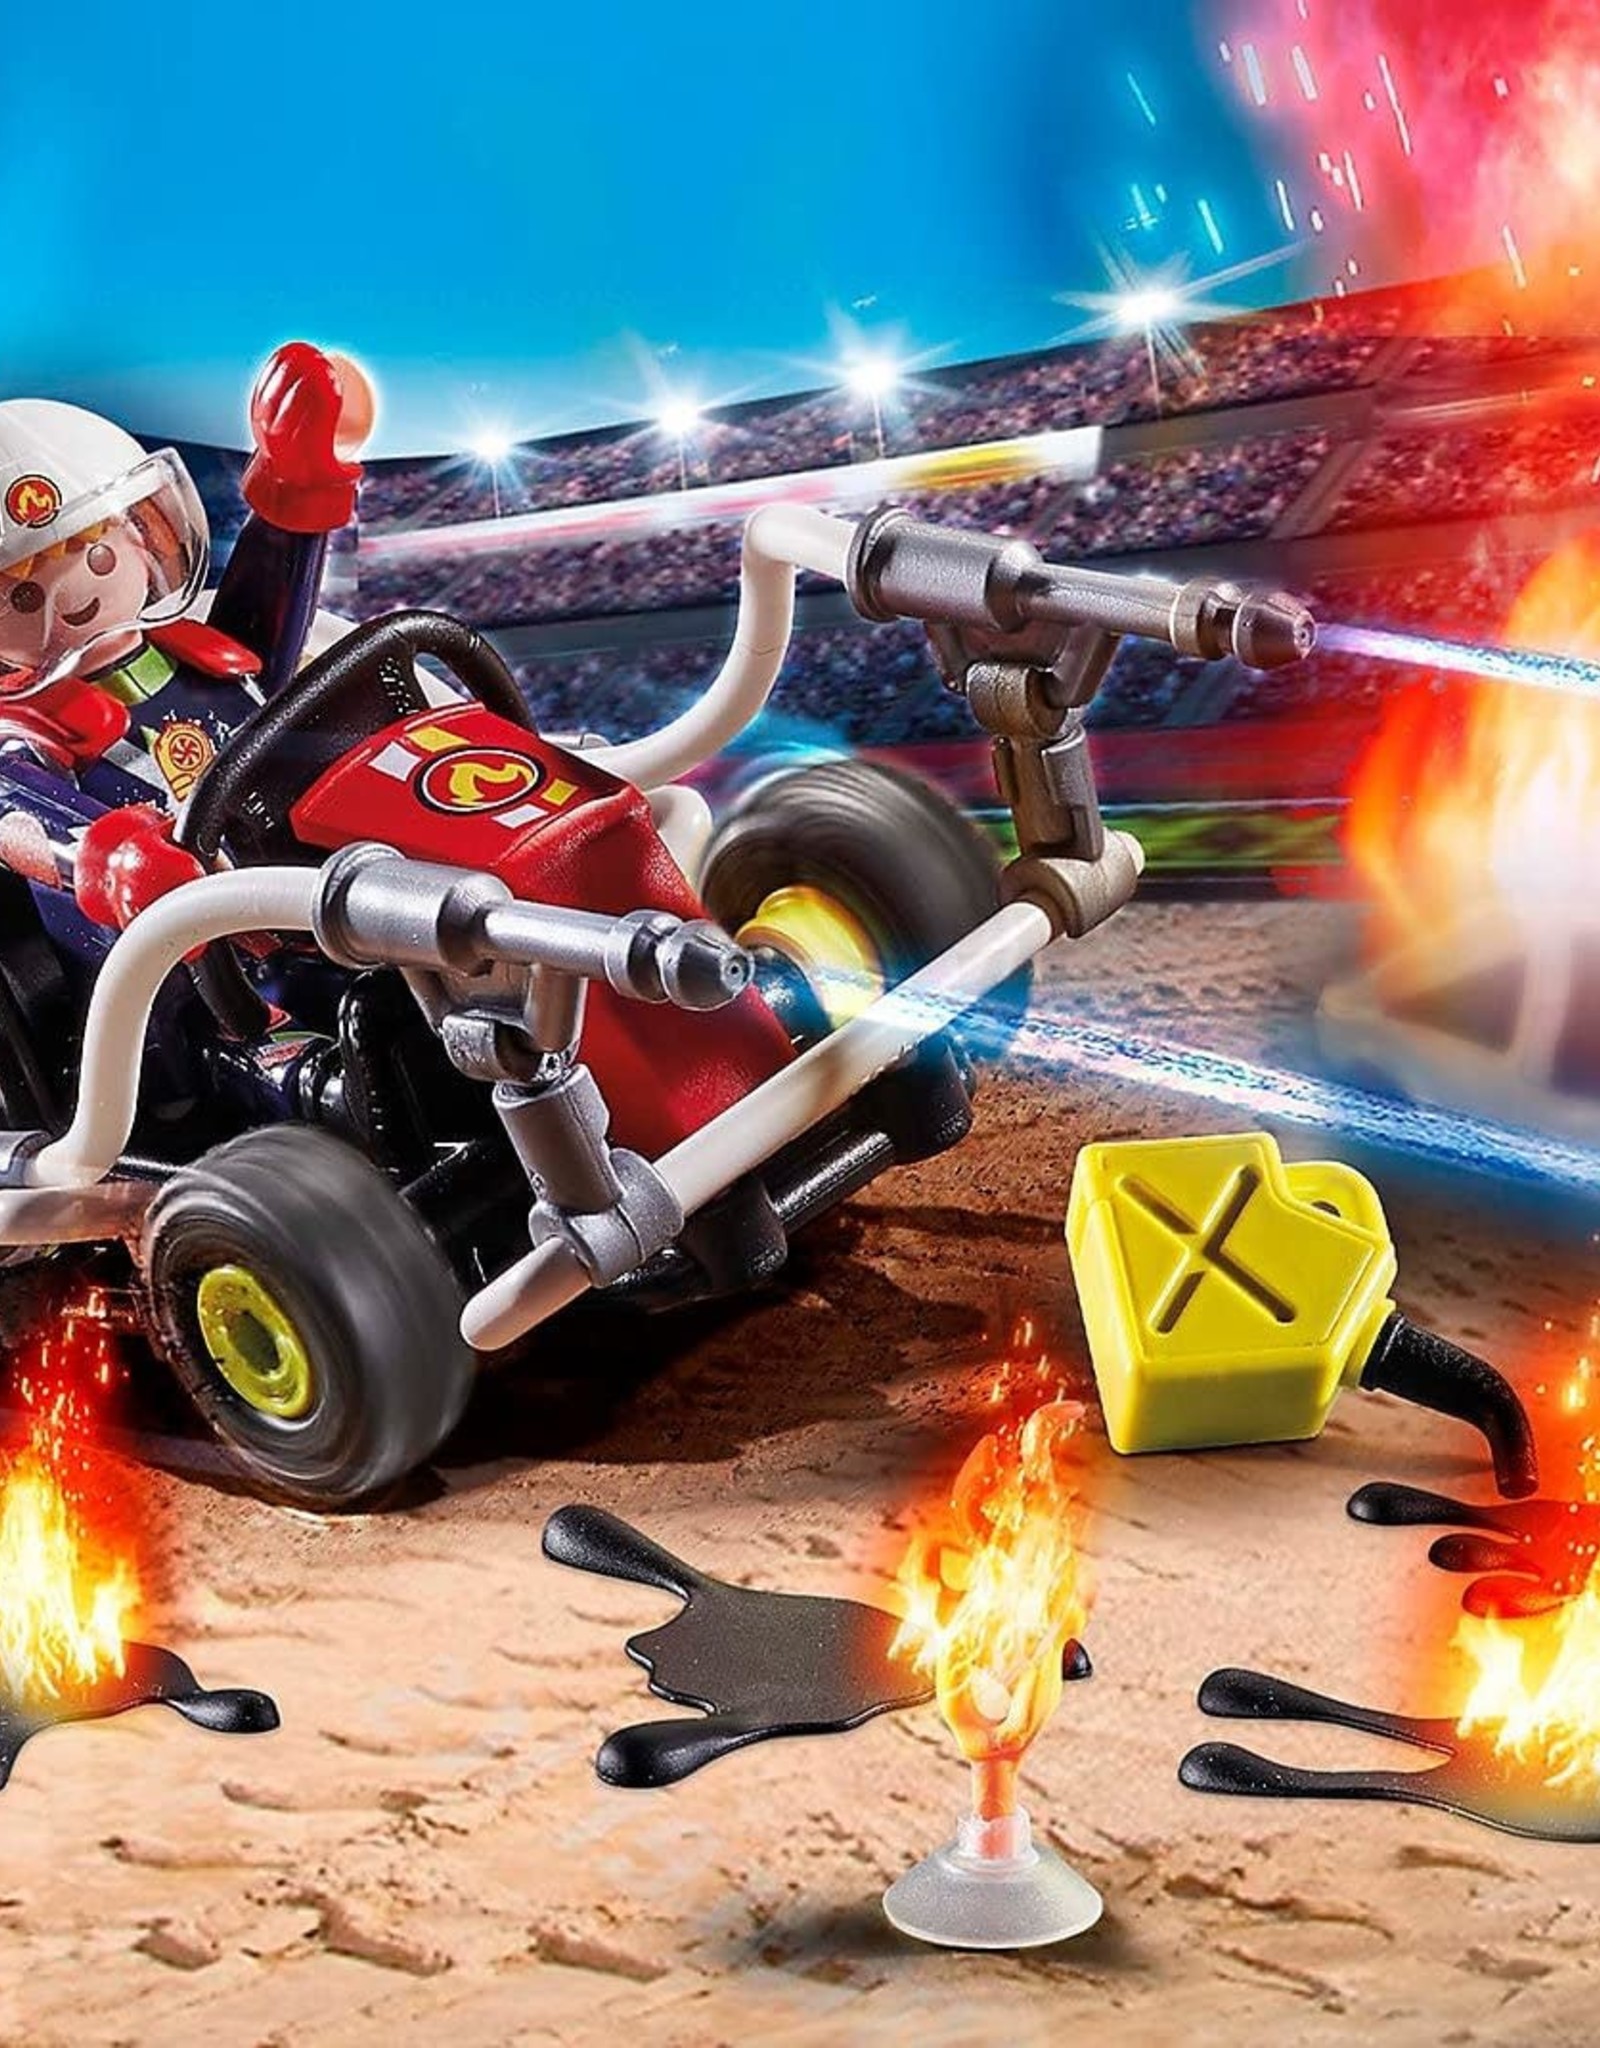 Playmobil PM Stunt Show Fire Quad